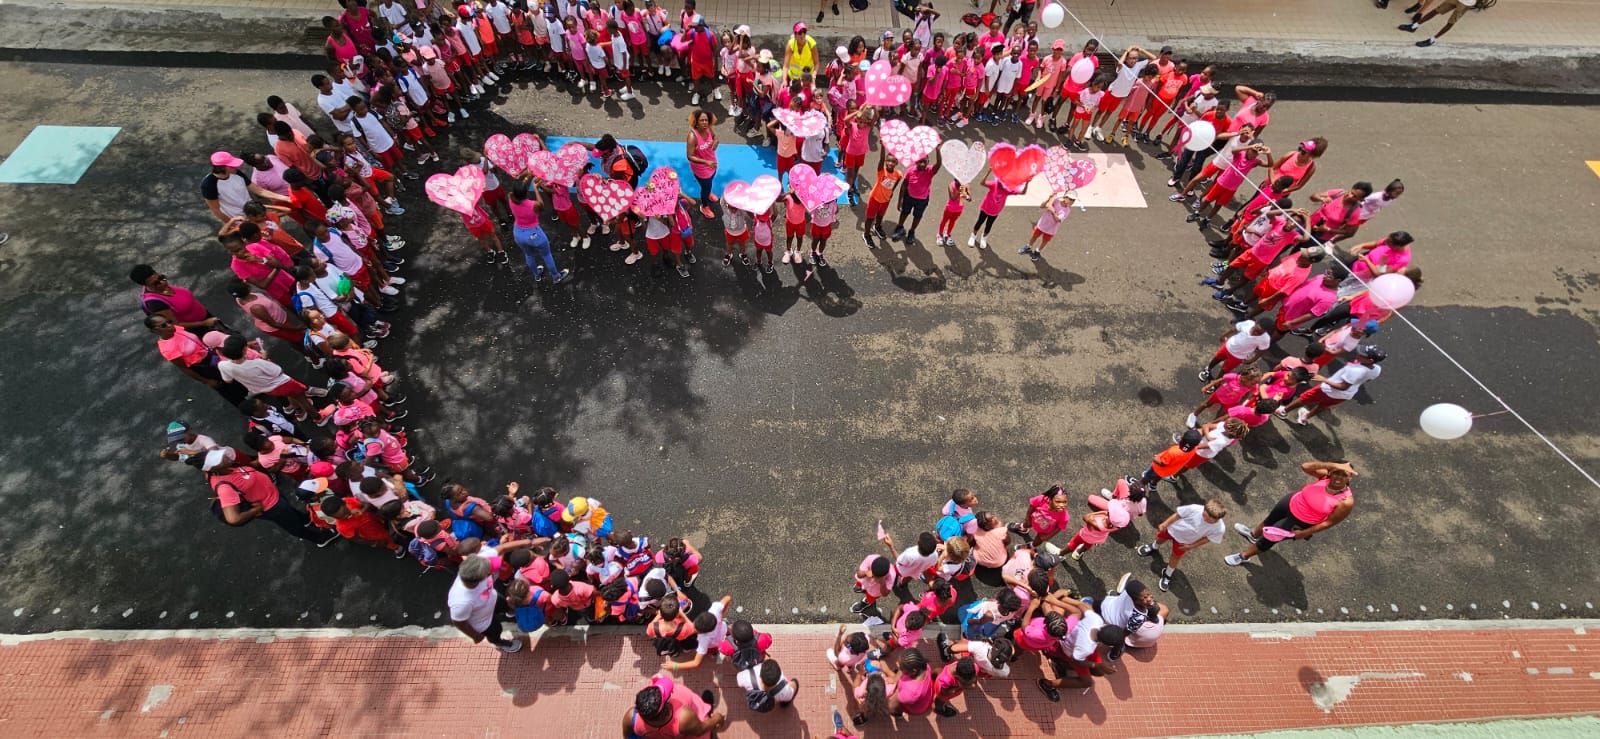     Une marche de sensibilisation au cancer du sein à l’école Gondeau A 

